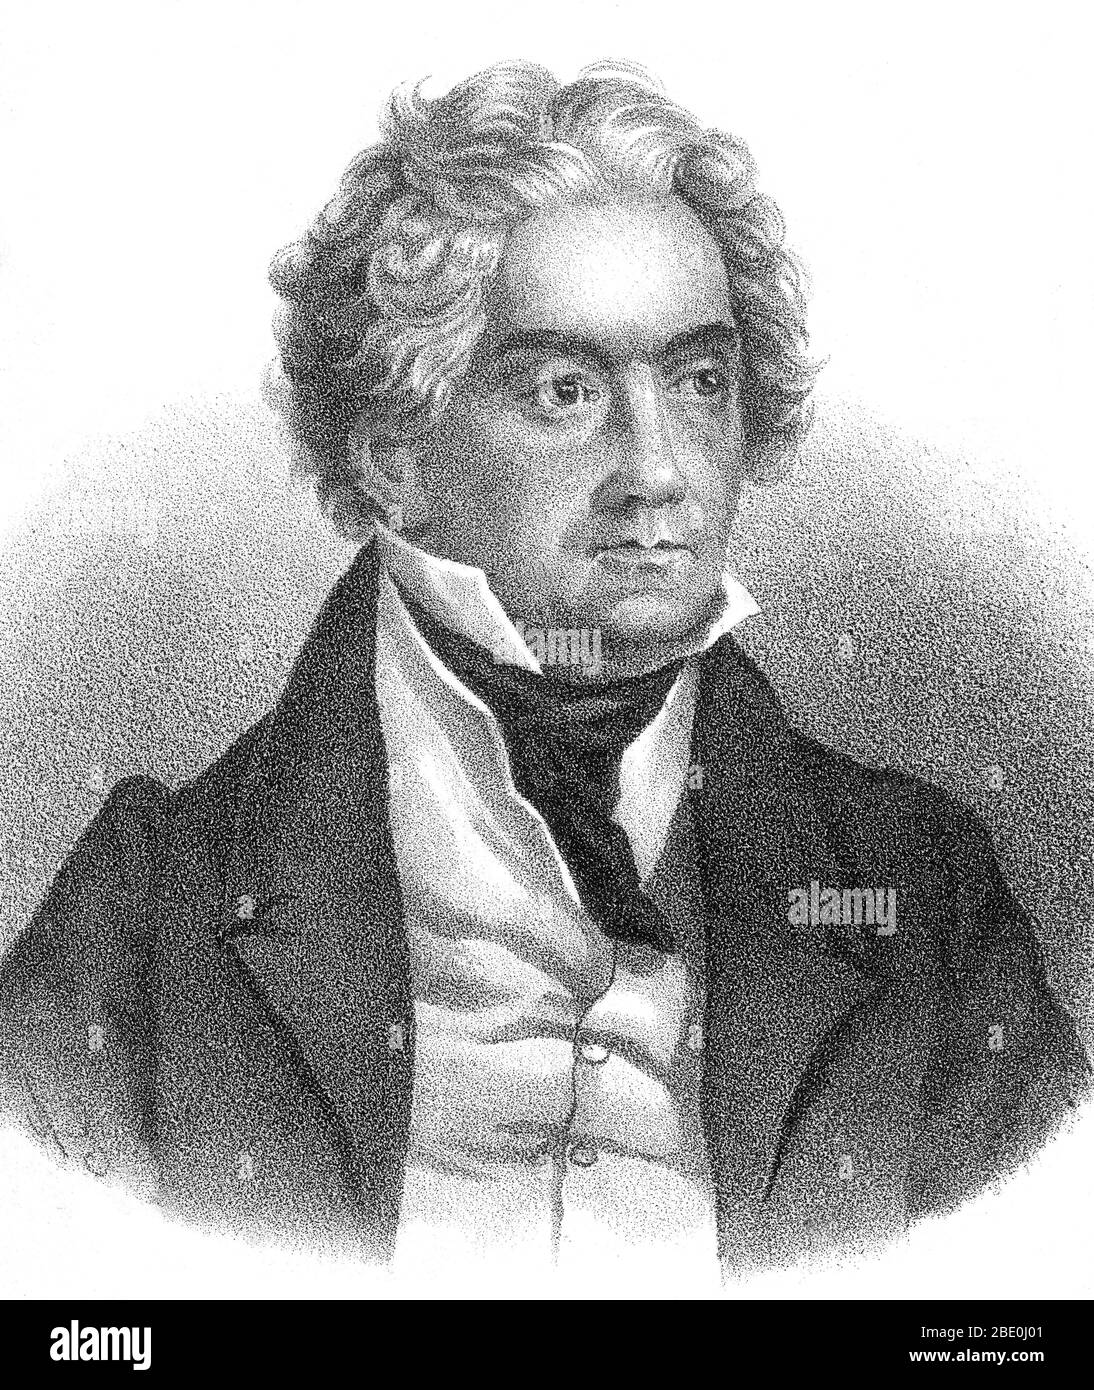 Ludwig van Beethoven (baptisé le 17 décembre 1770 au 26 mars 1827) fut  compositeur et pianiste allemand. Figure cruciale dans la transition entre  les époques classique et romantique de la musique d'art